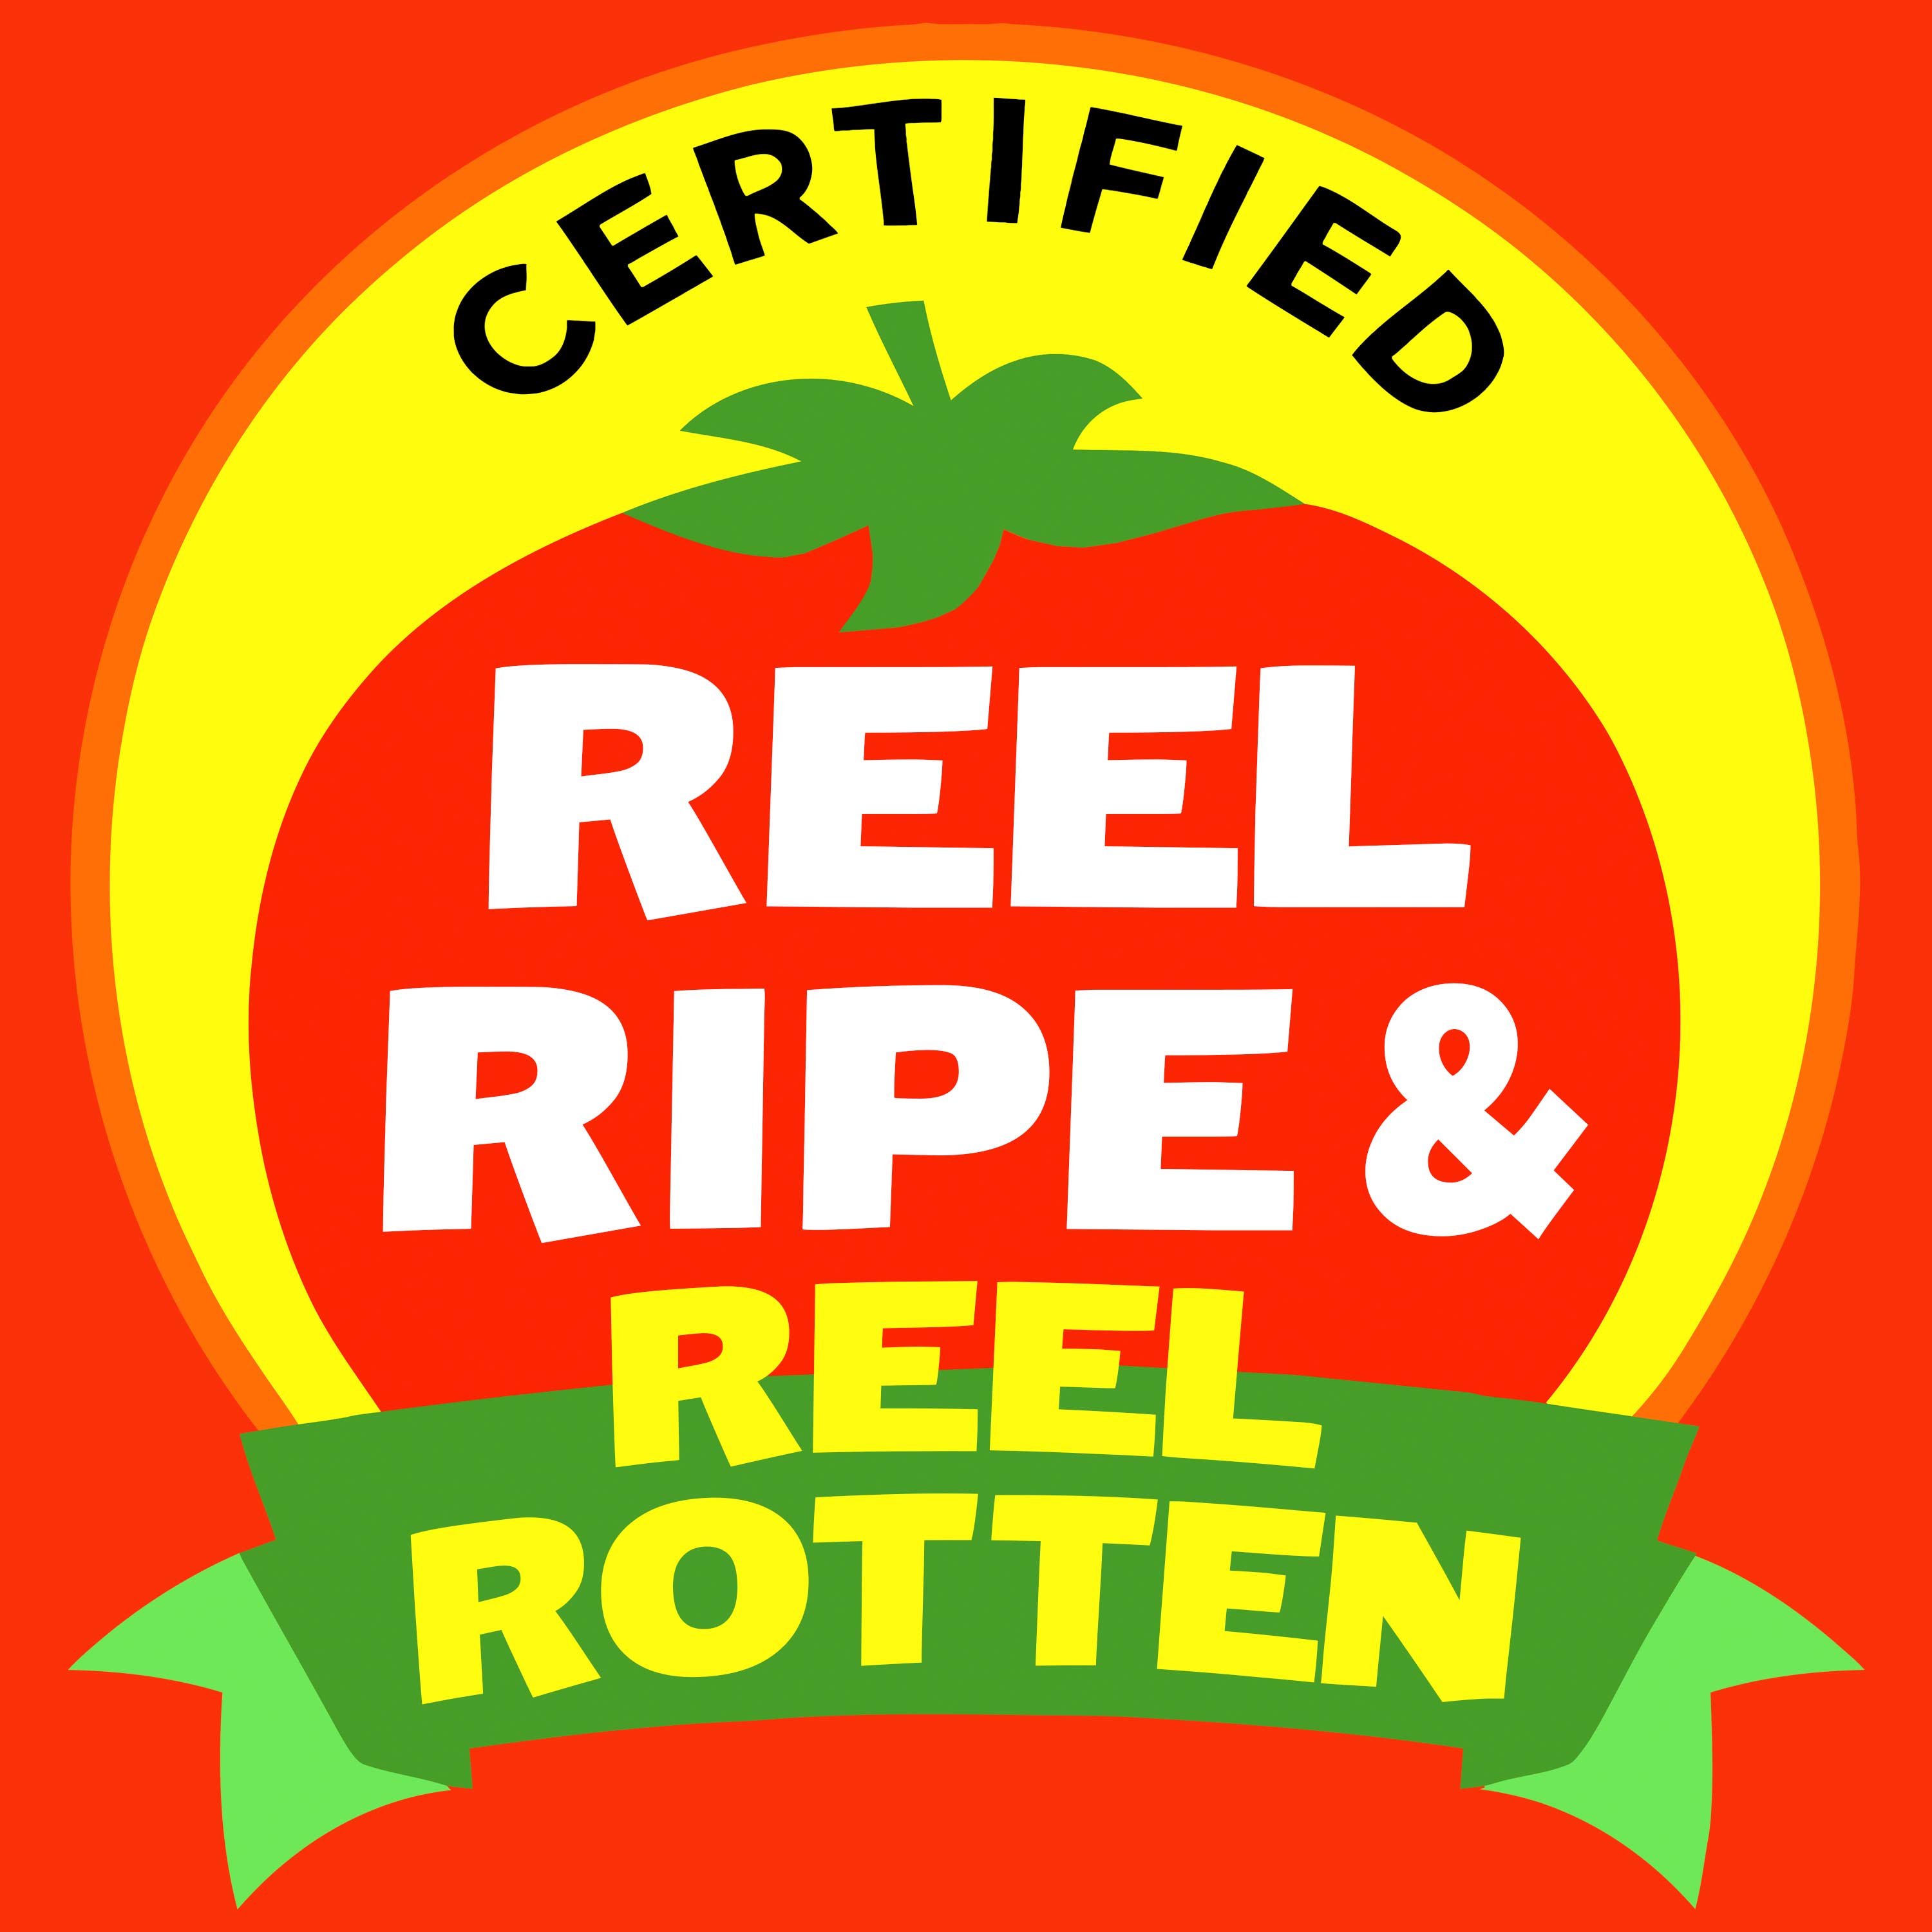 Reel Ripe & Reel Rotten